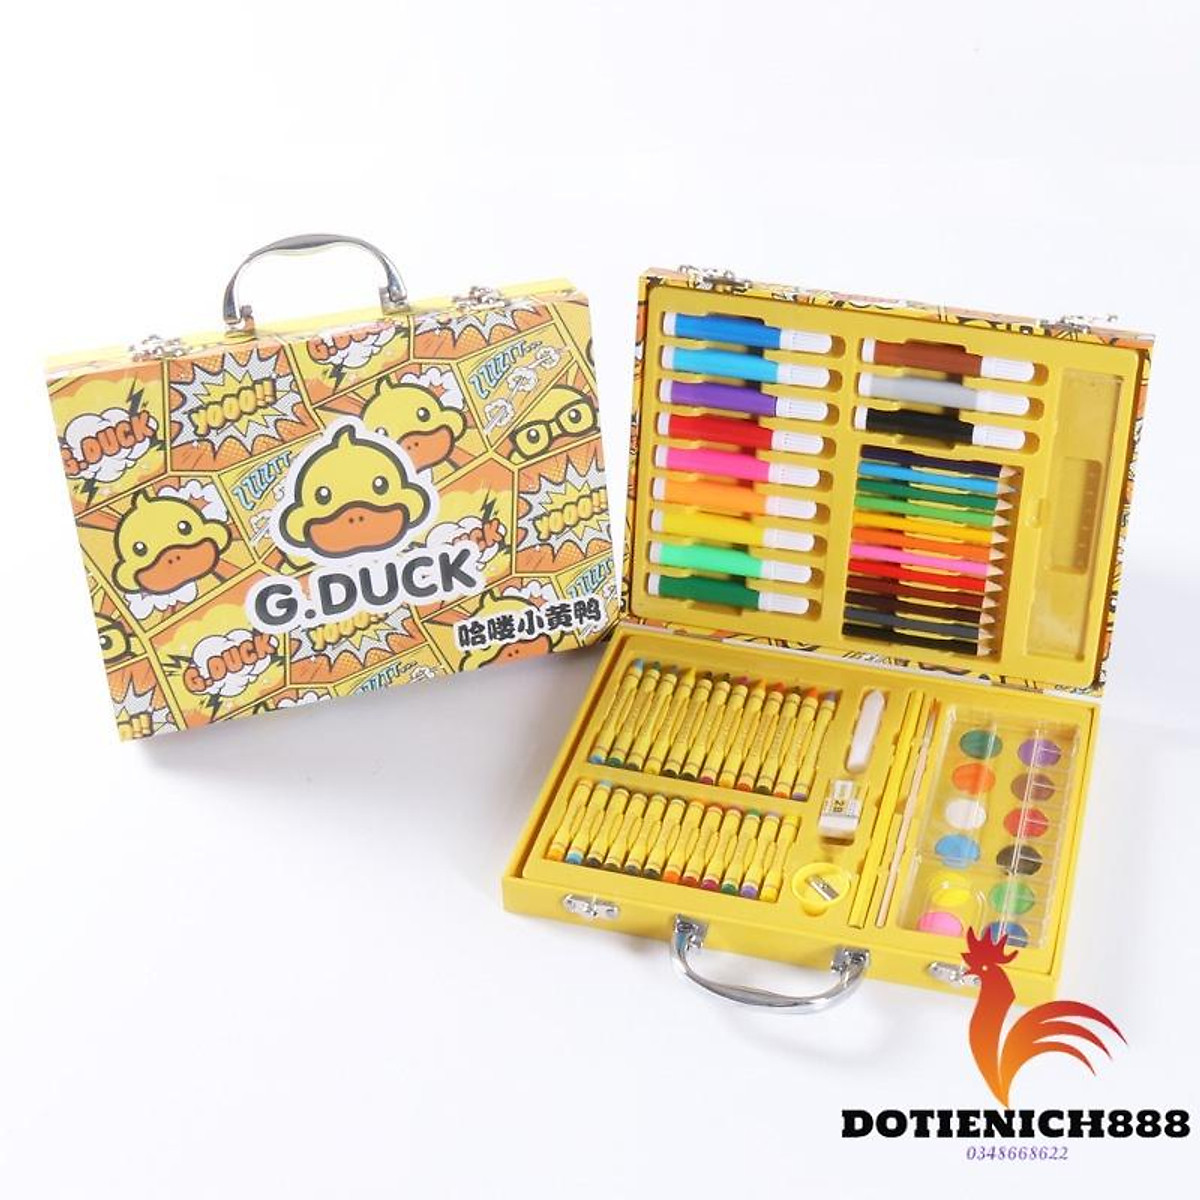 Hộp bút màu G-duck 67 chi tiết hình vịt vàng